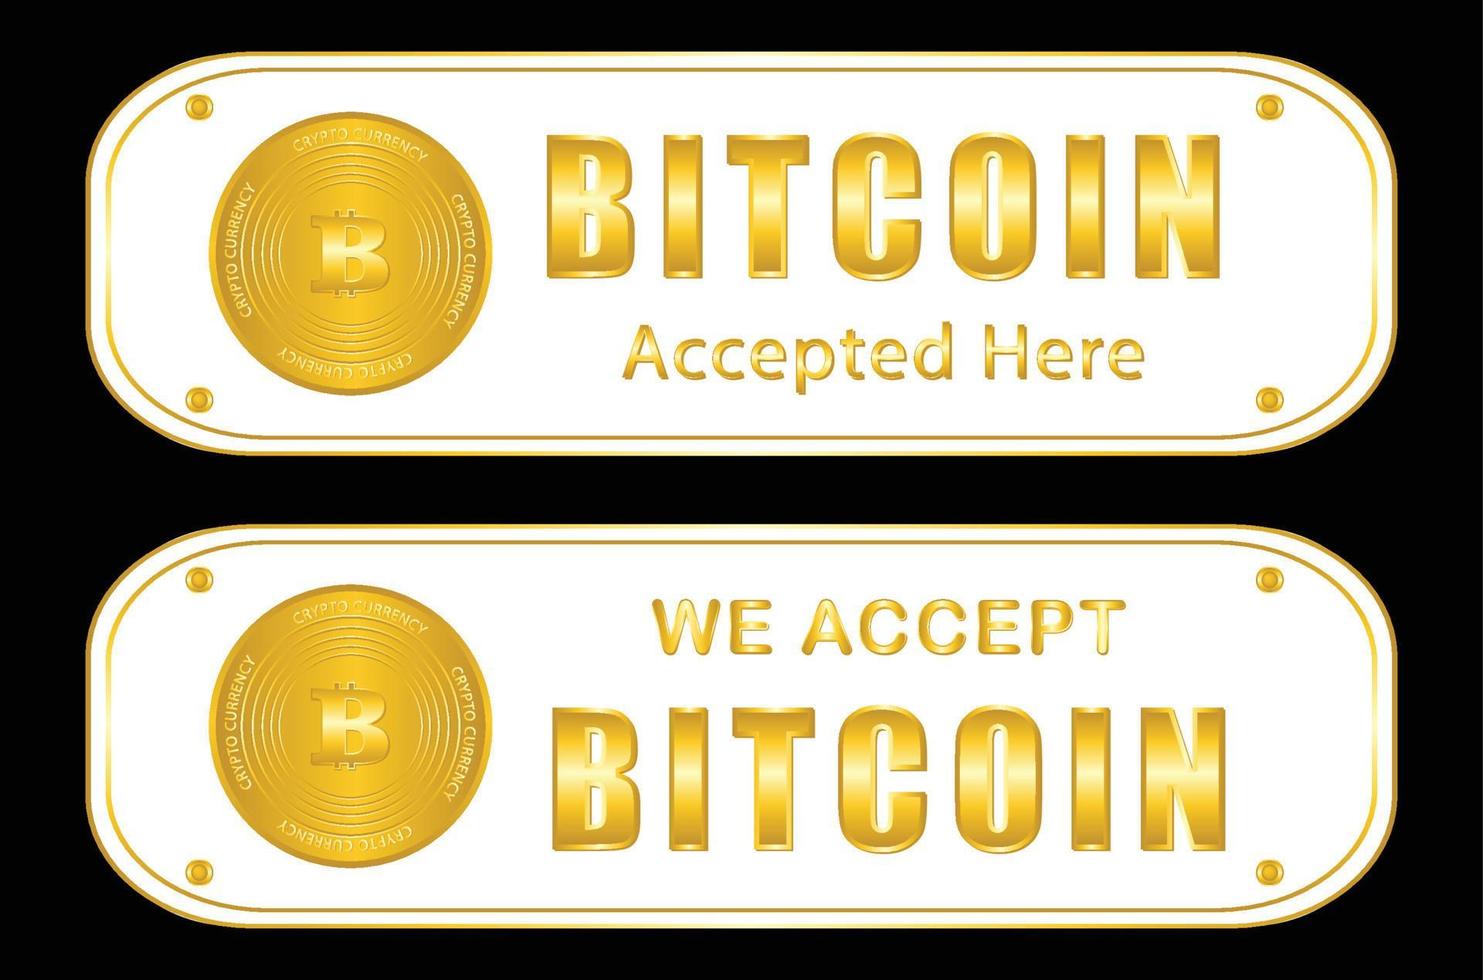 accettiamo il pagamento bitcoin firmato vettore